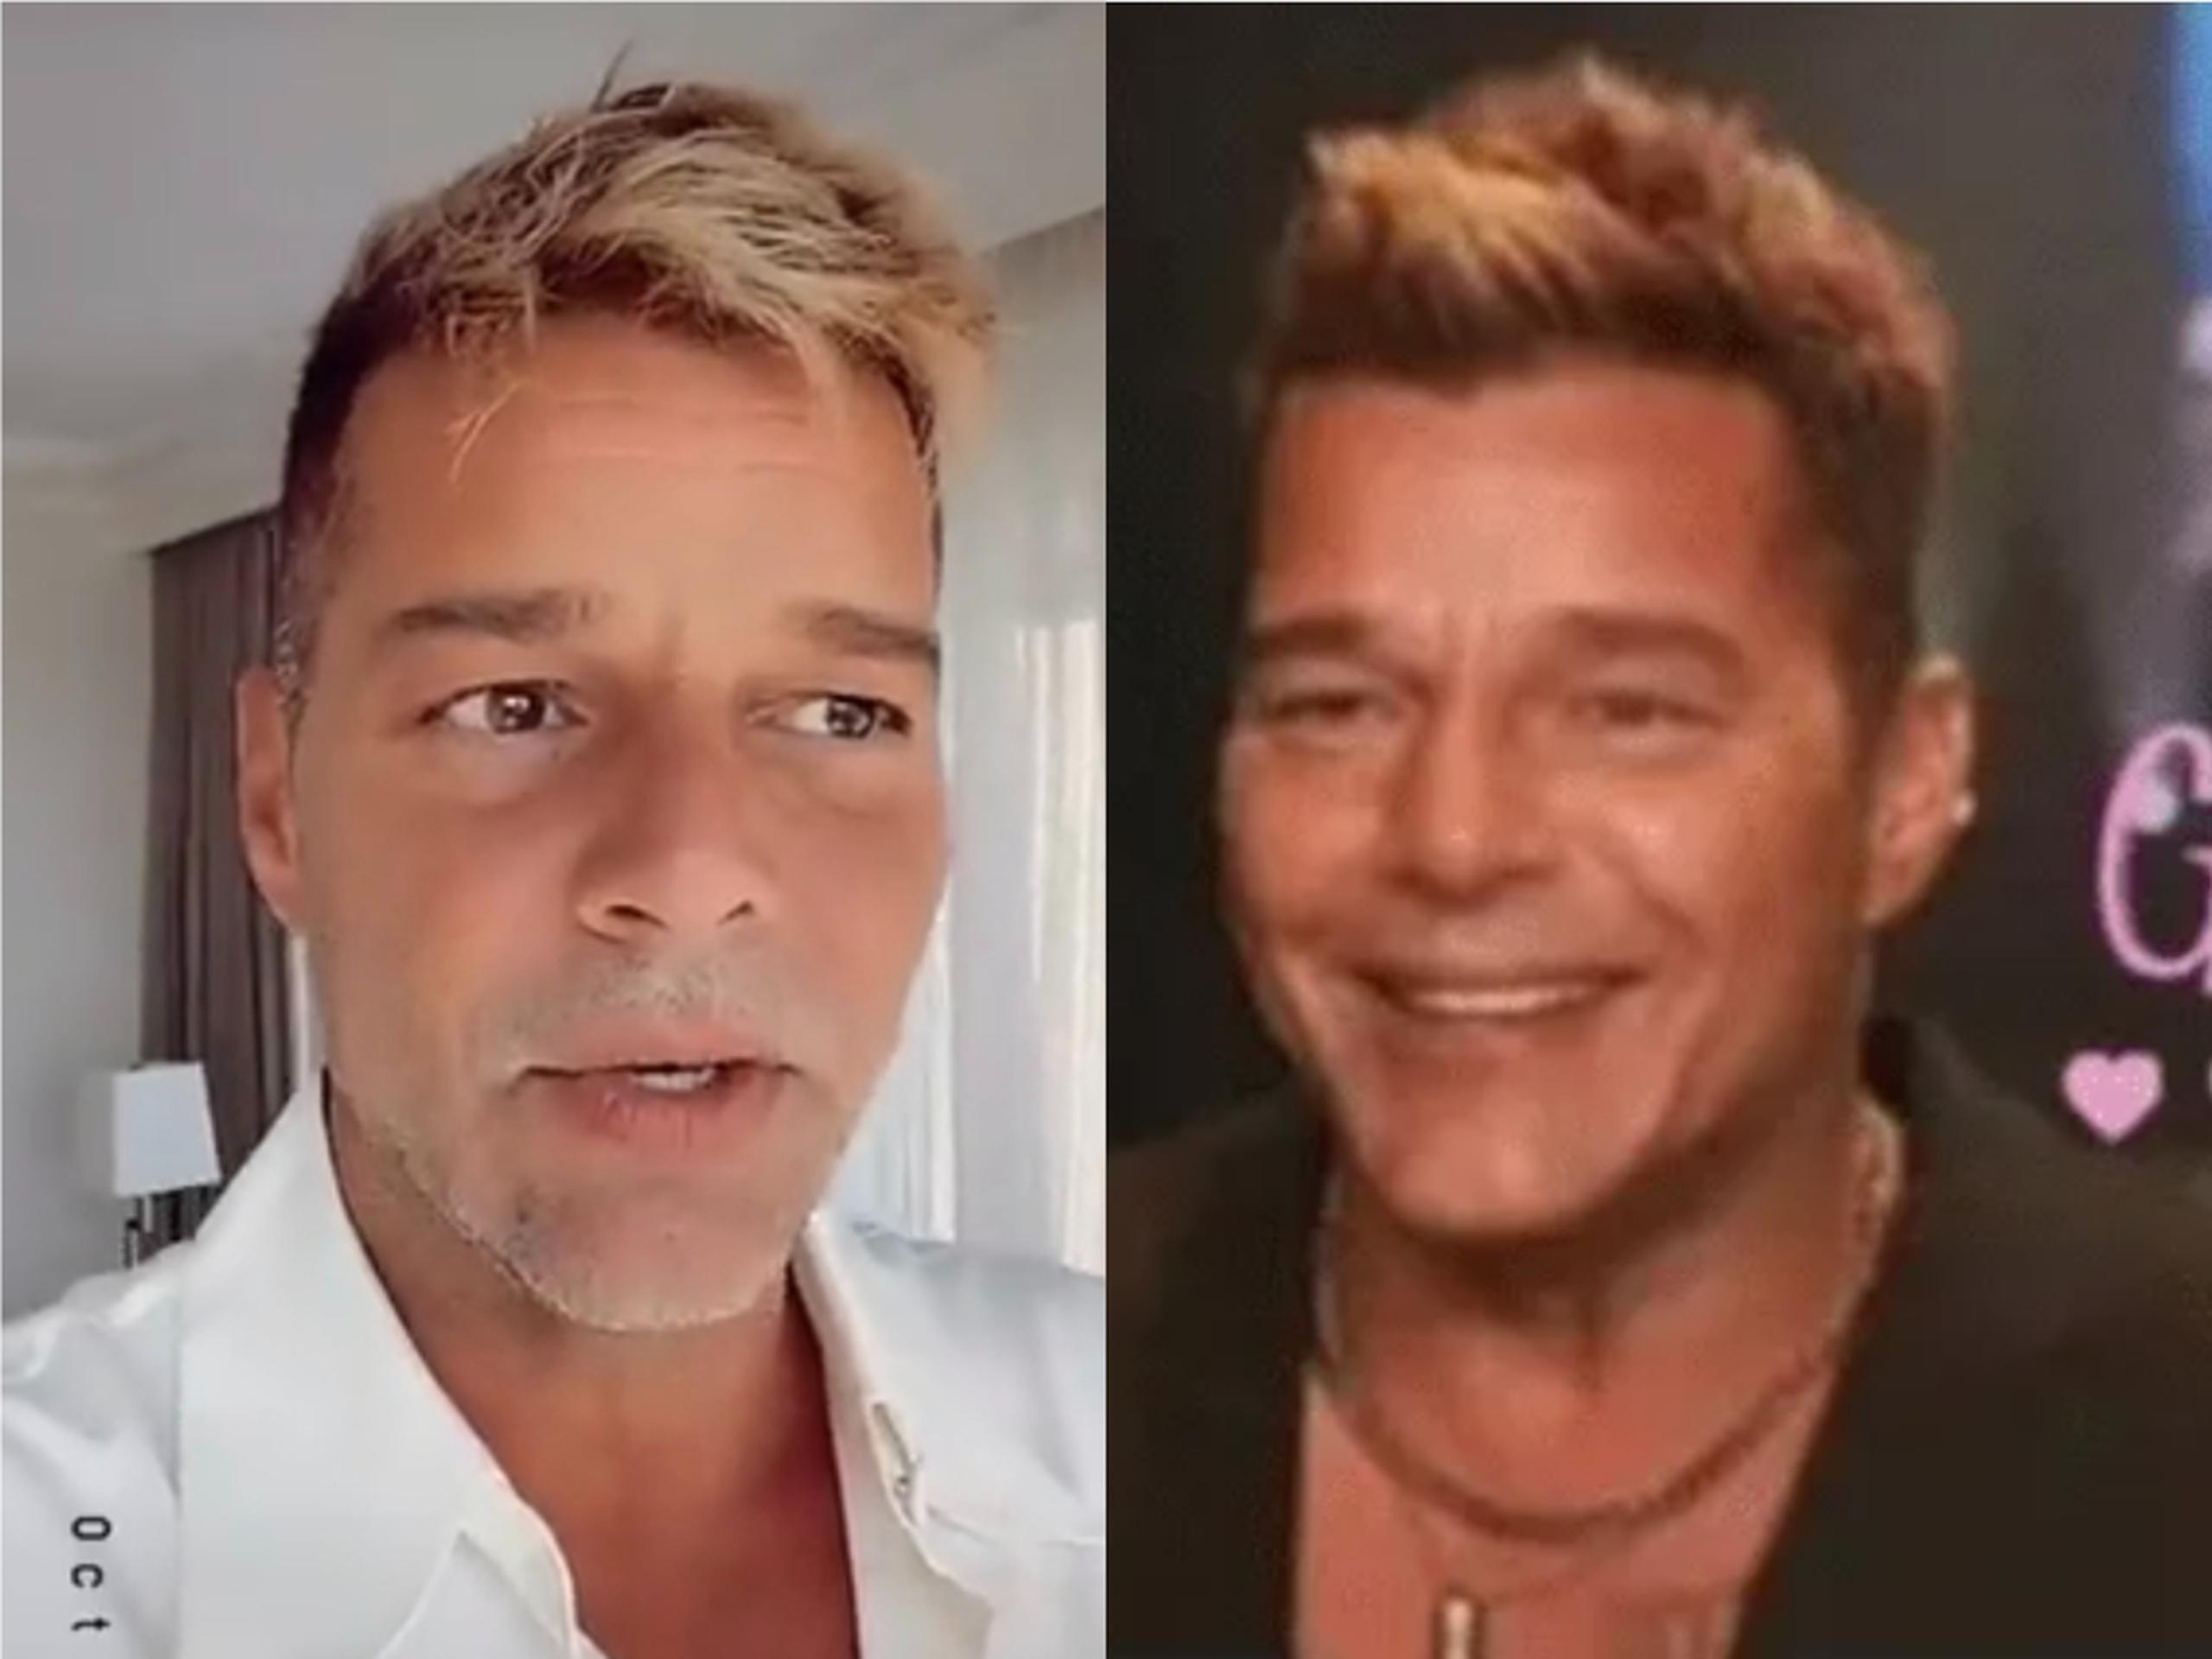 Ricky Martin: a la derecha, durante el video que explica qué sucedió; a la izquierda, durante la entrevista para "El gordo y la flaca".